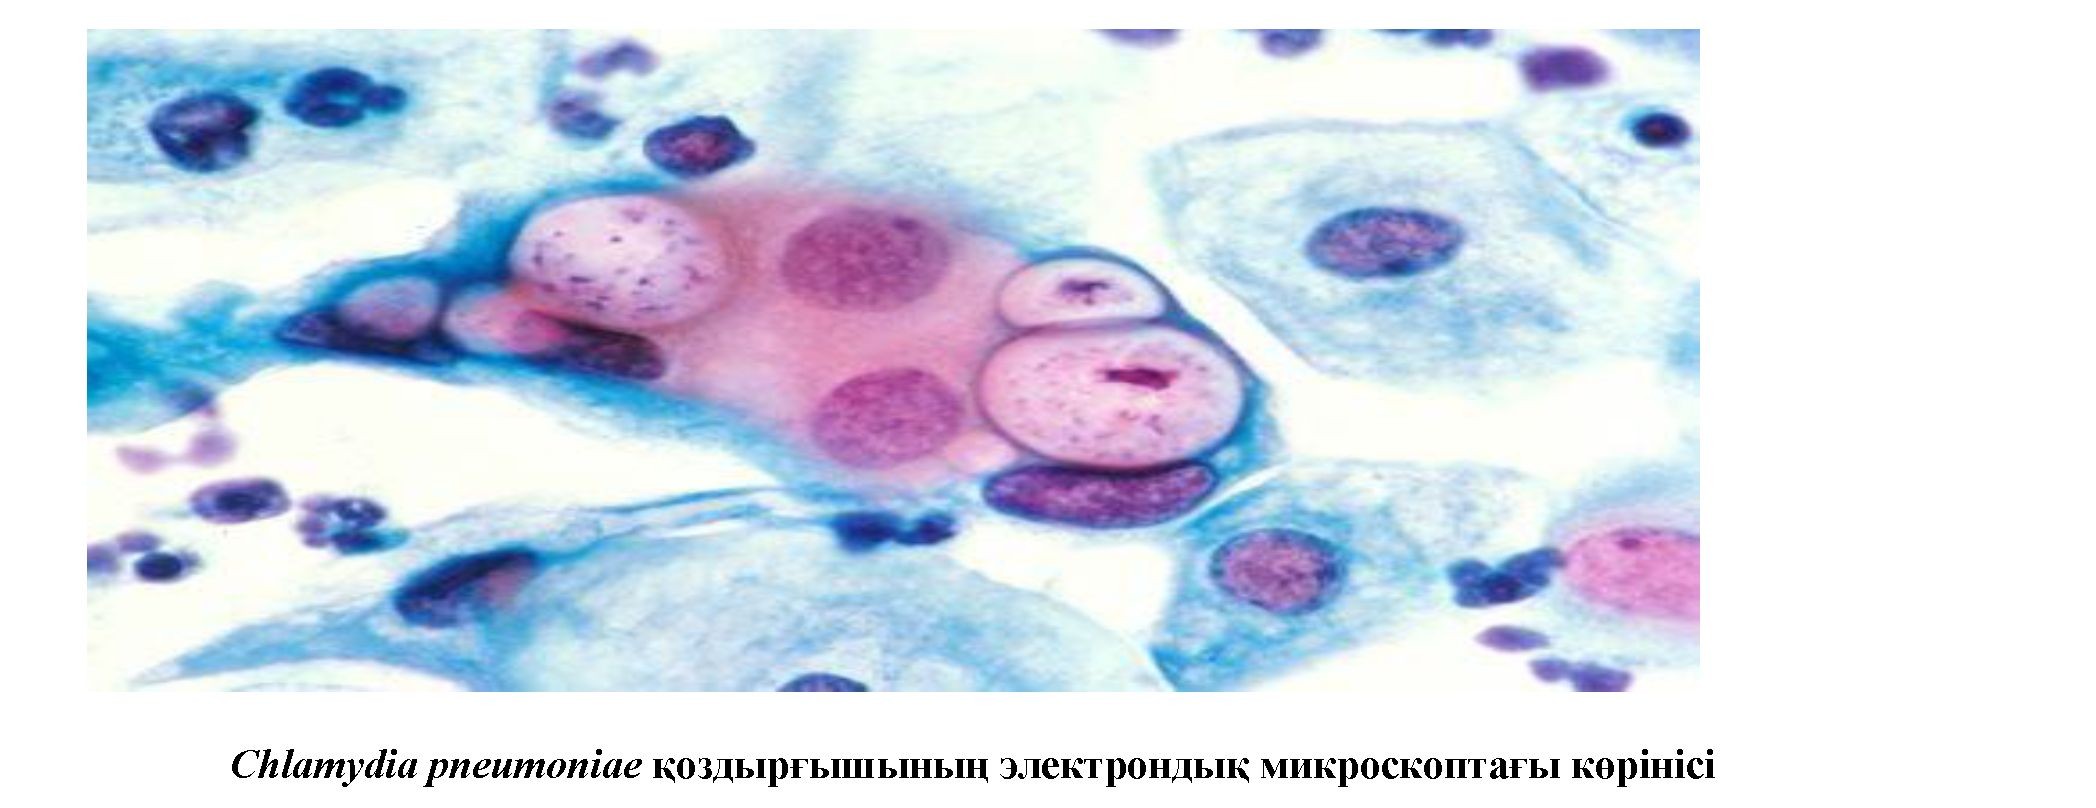 Хламидиялық пневмонияны қоздырушылардың ерекшеліктерін анықтау